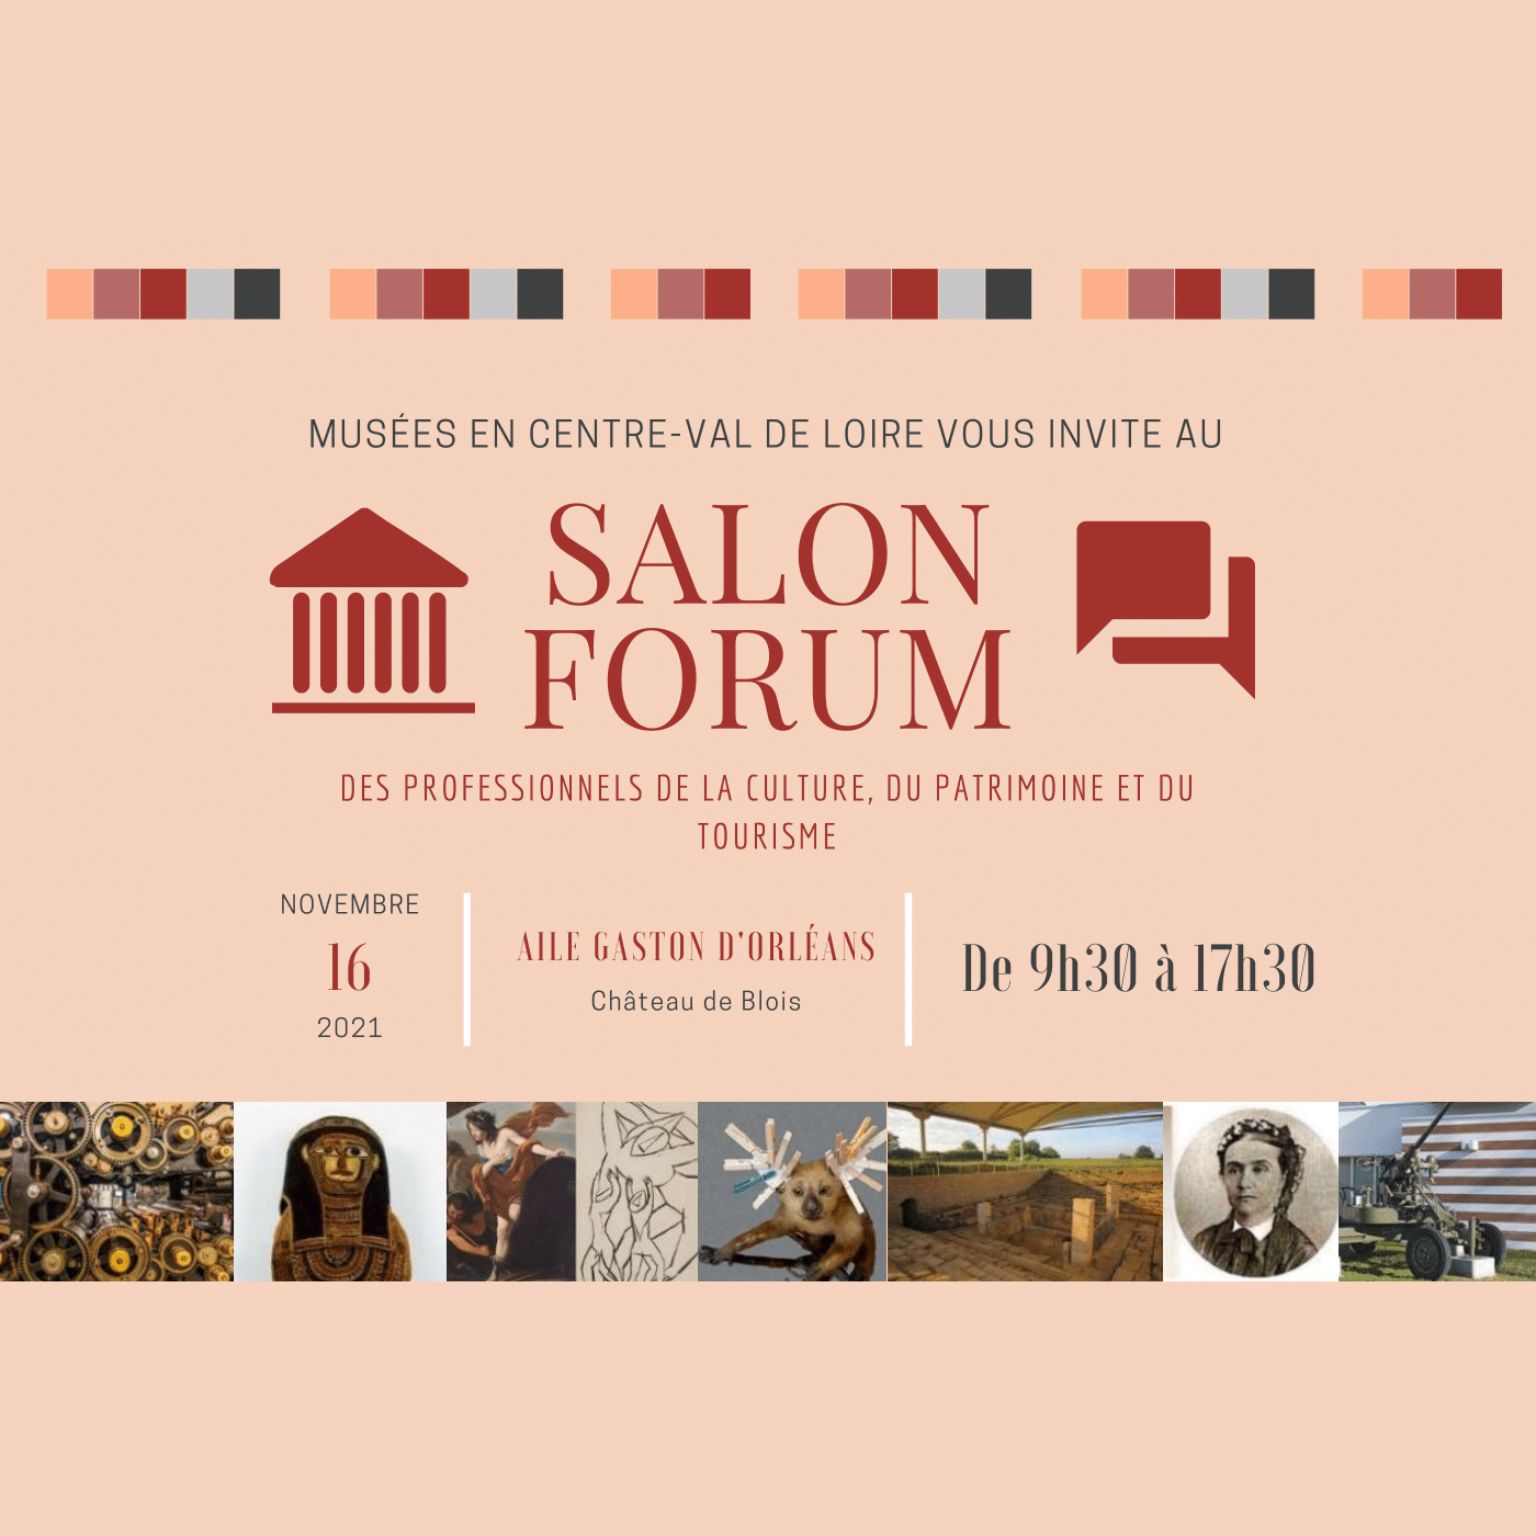 Salon Forum des Professionnels de la Culture, du Patrimoine et du Tourisme